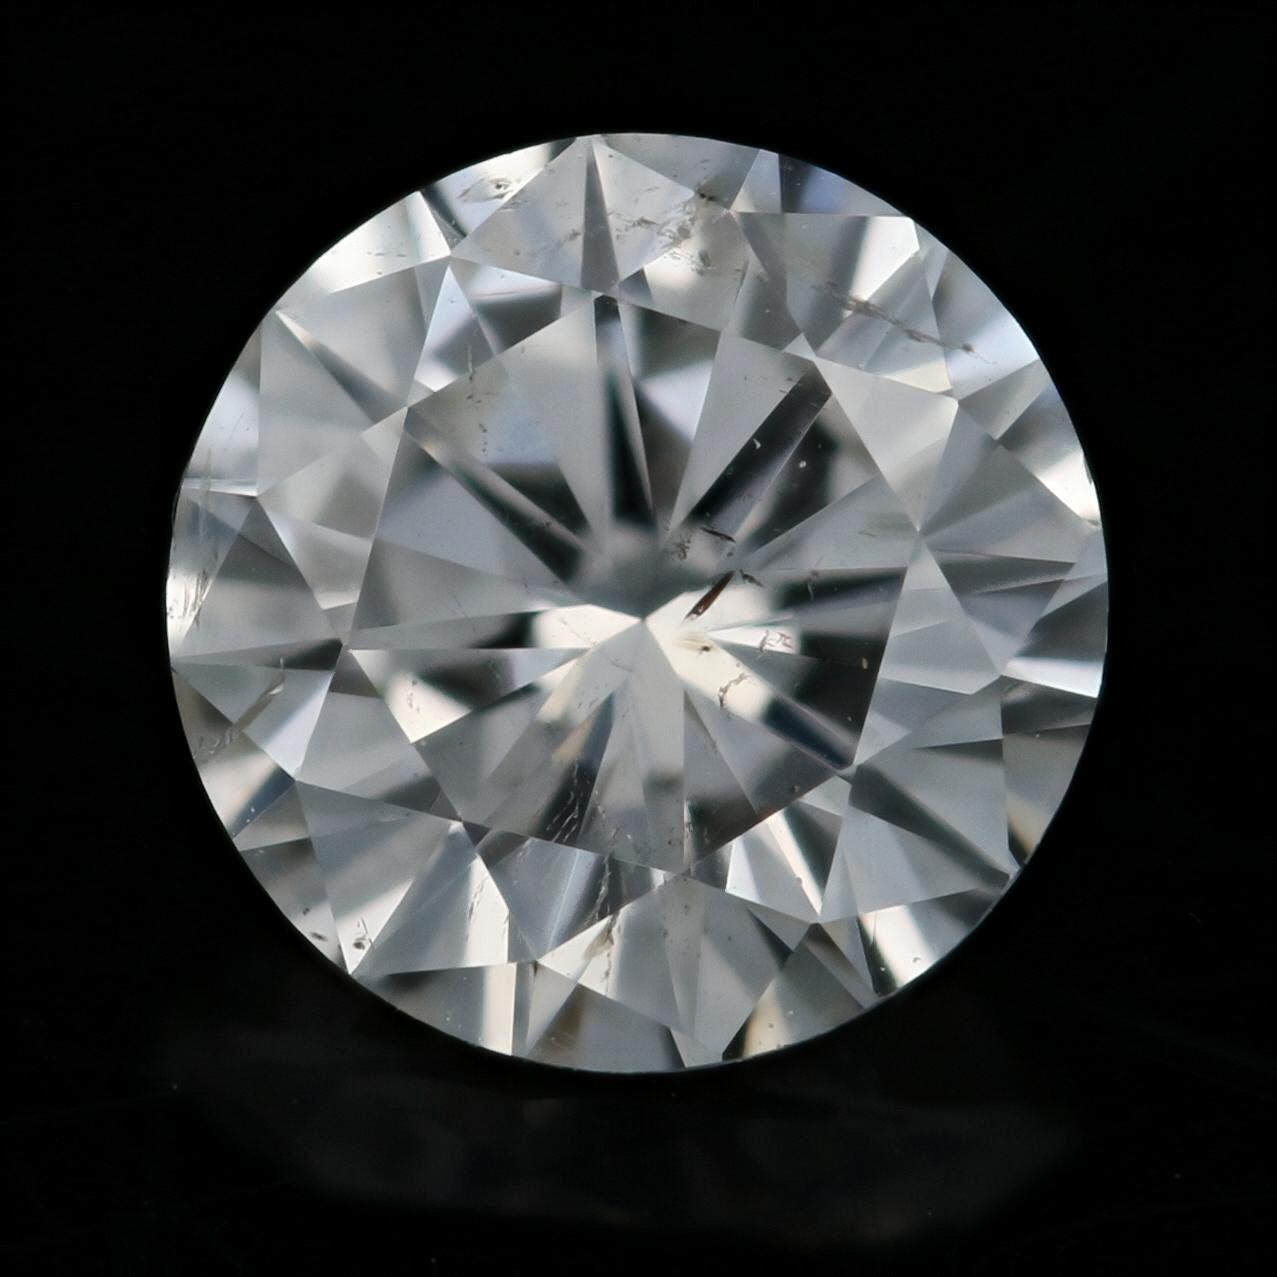 actual size of 1 carat diamond